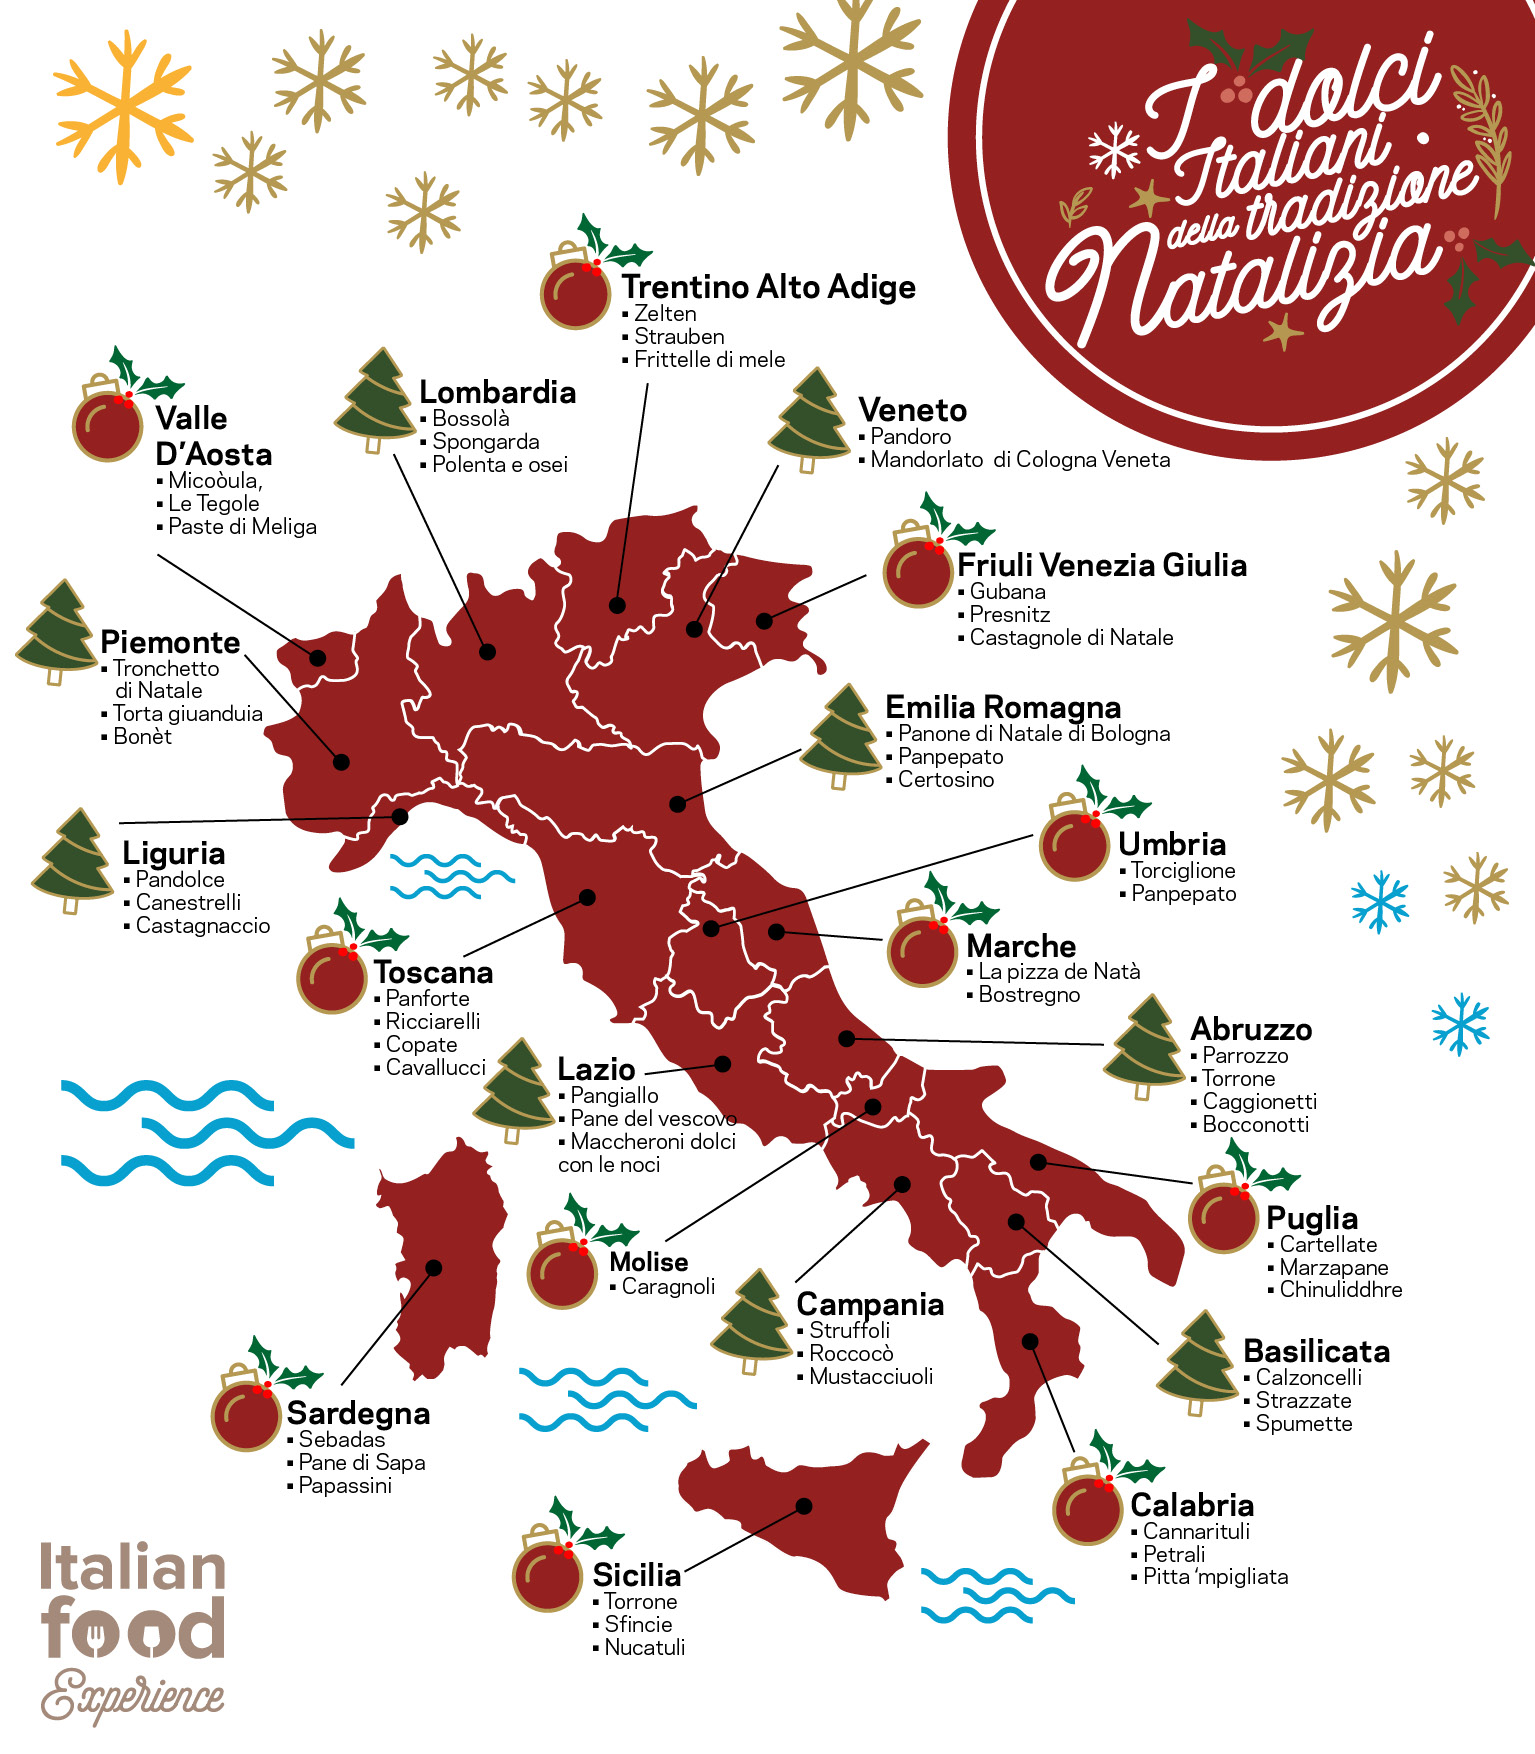 Dolci Tradizionali Natalizi Italiani.Dolci Tipici Natalizi In Italia Regione Per Regione